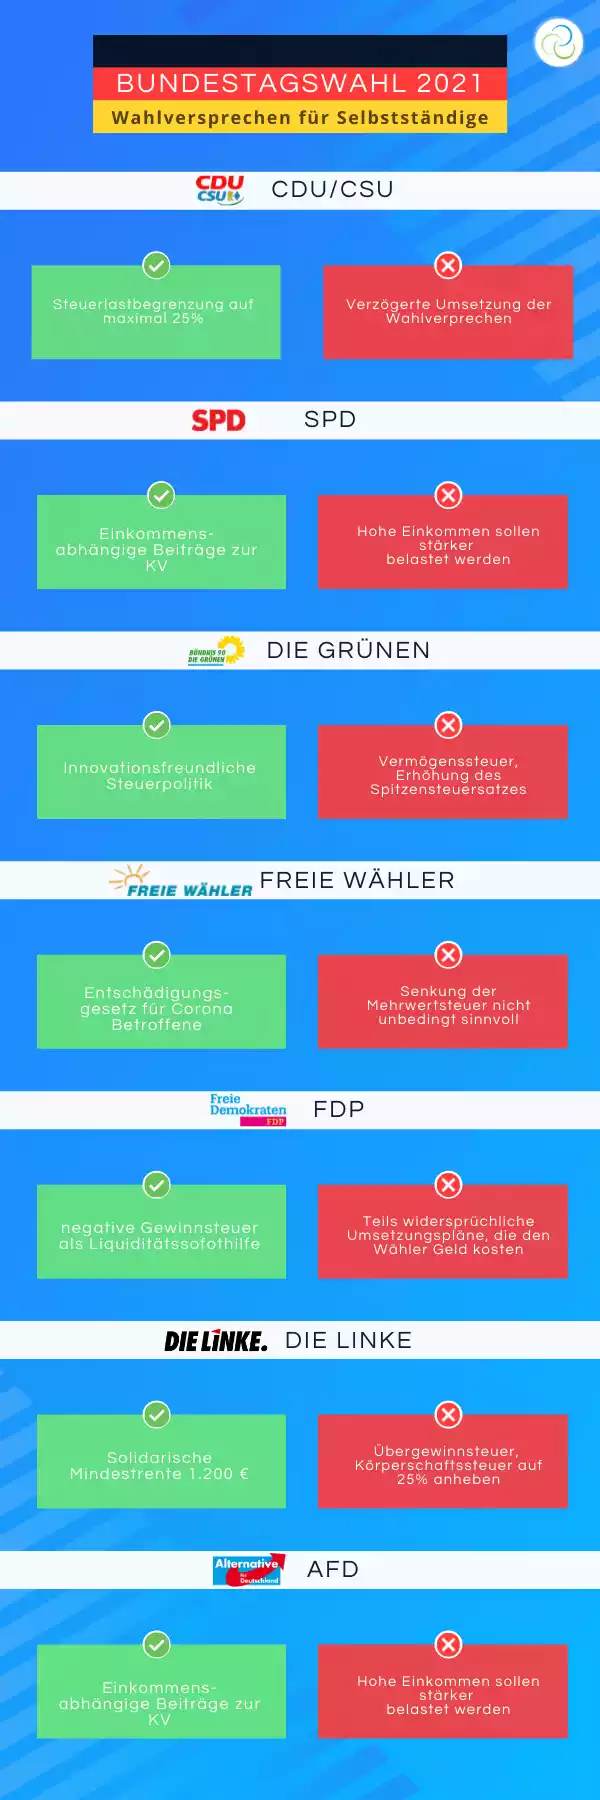 Bundestagswahl 2021 infografik orbnet